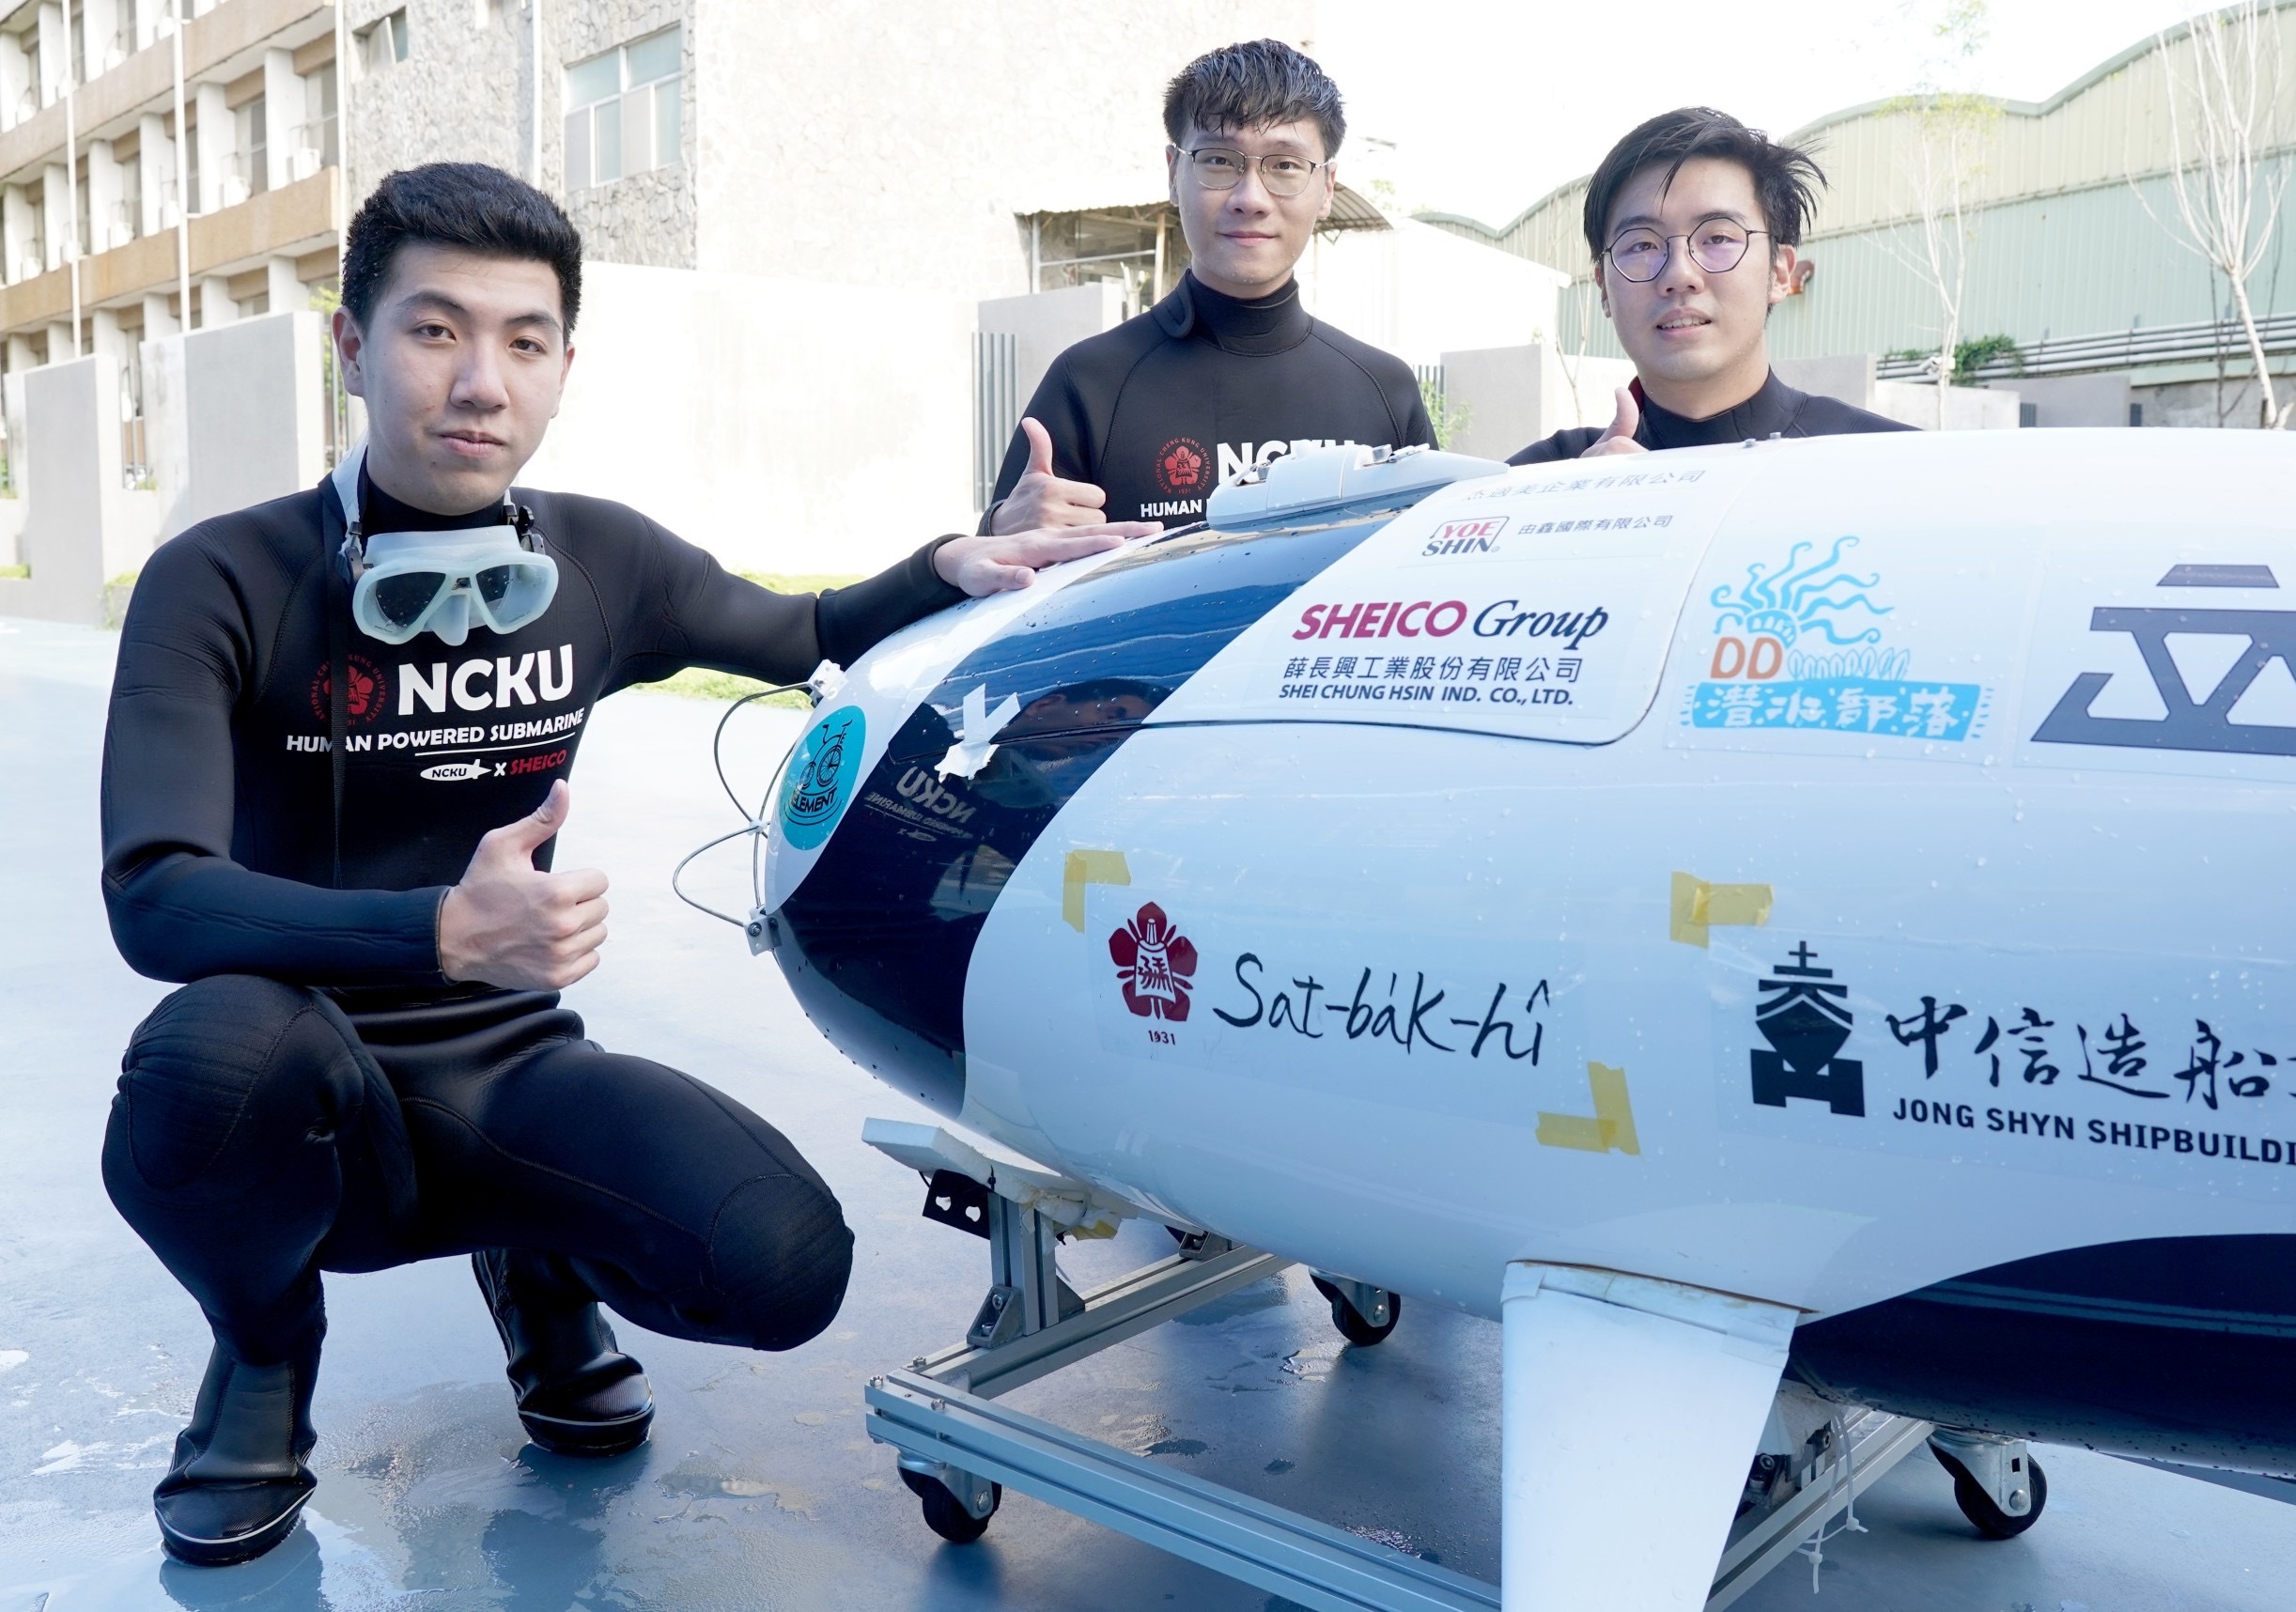 The  human-powered submarine won its name “sat-ba̍k-hî”  to representative of Tainan’s and NCKU’s features